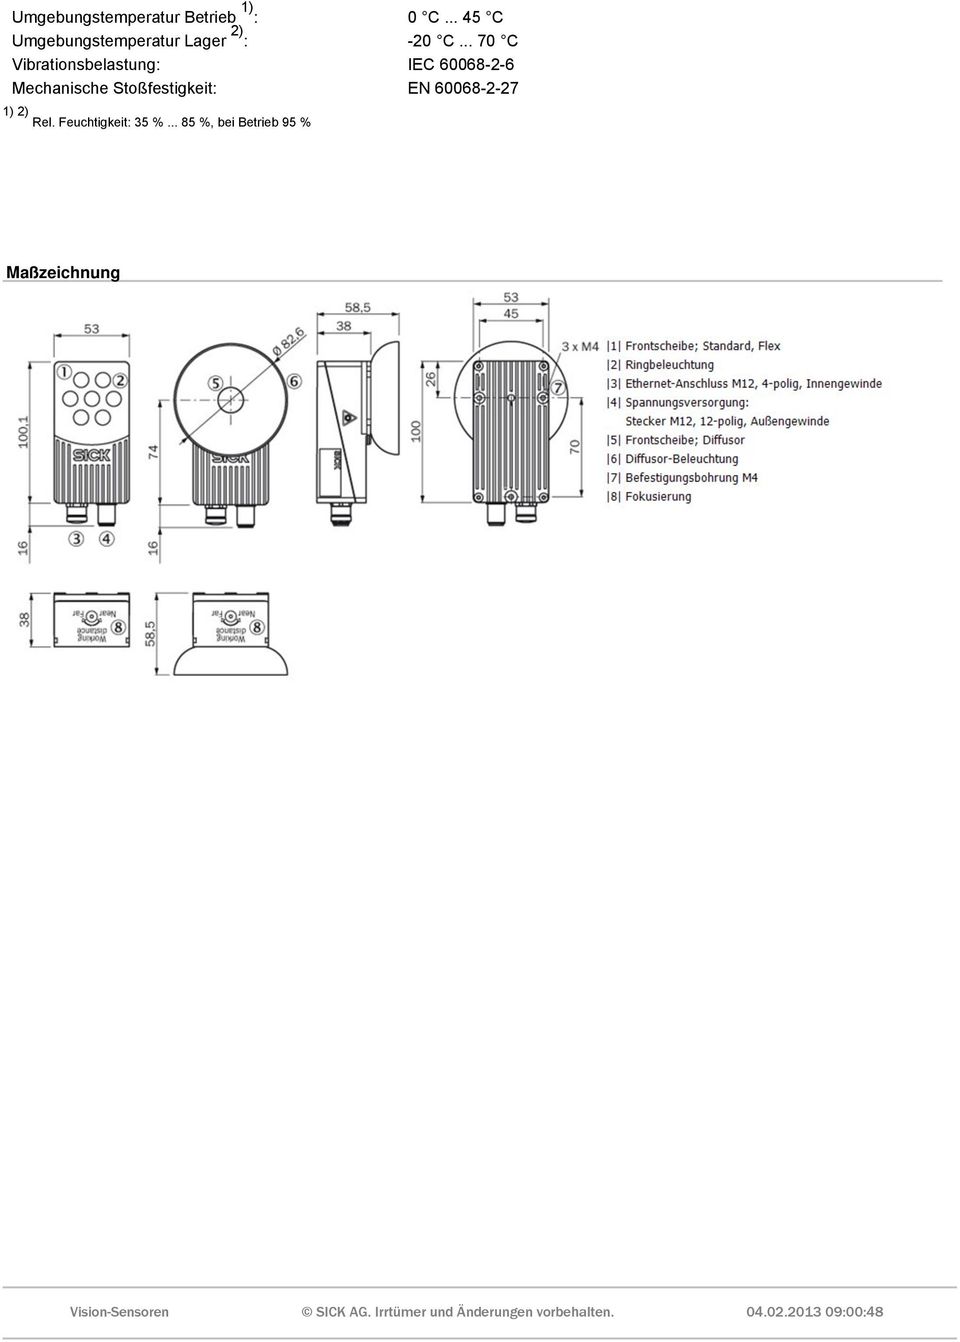 .. 70 C Vibrationsbelastung: IEC 60068-2-6 Mechanische